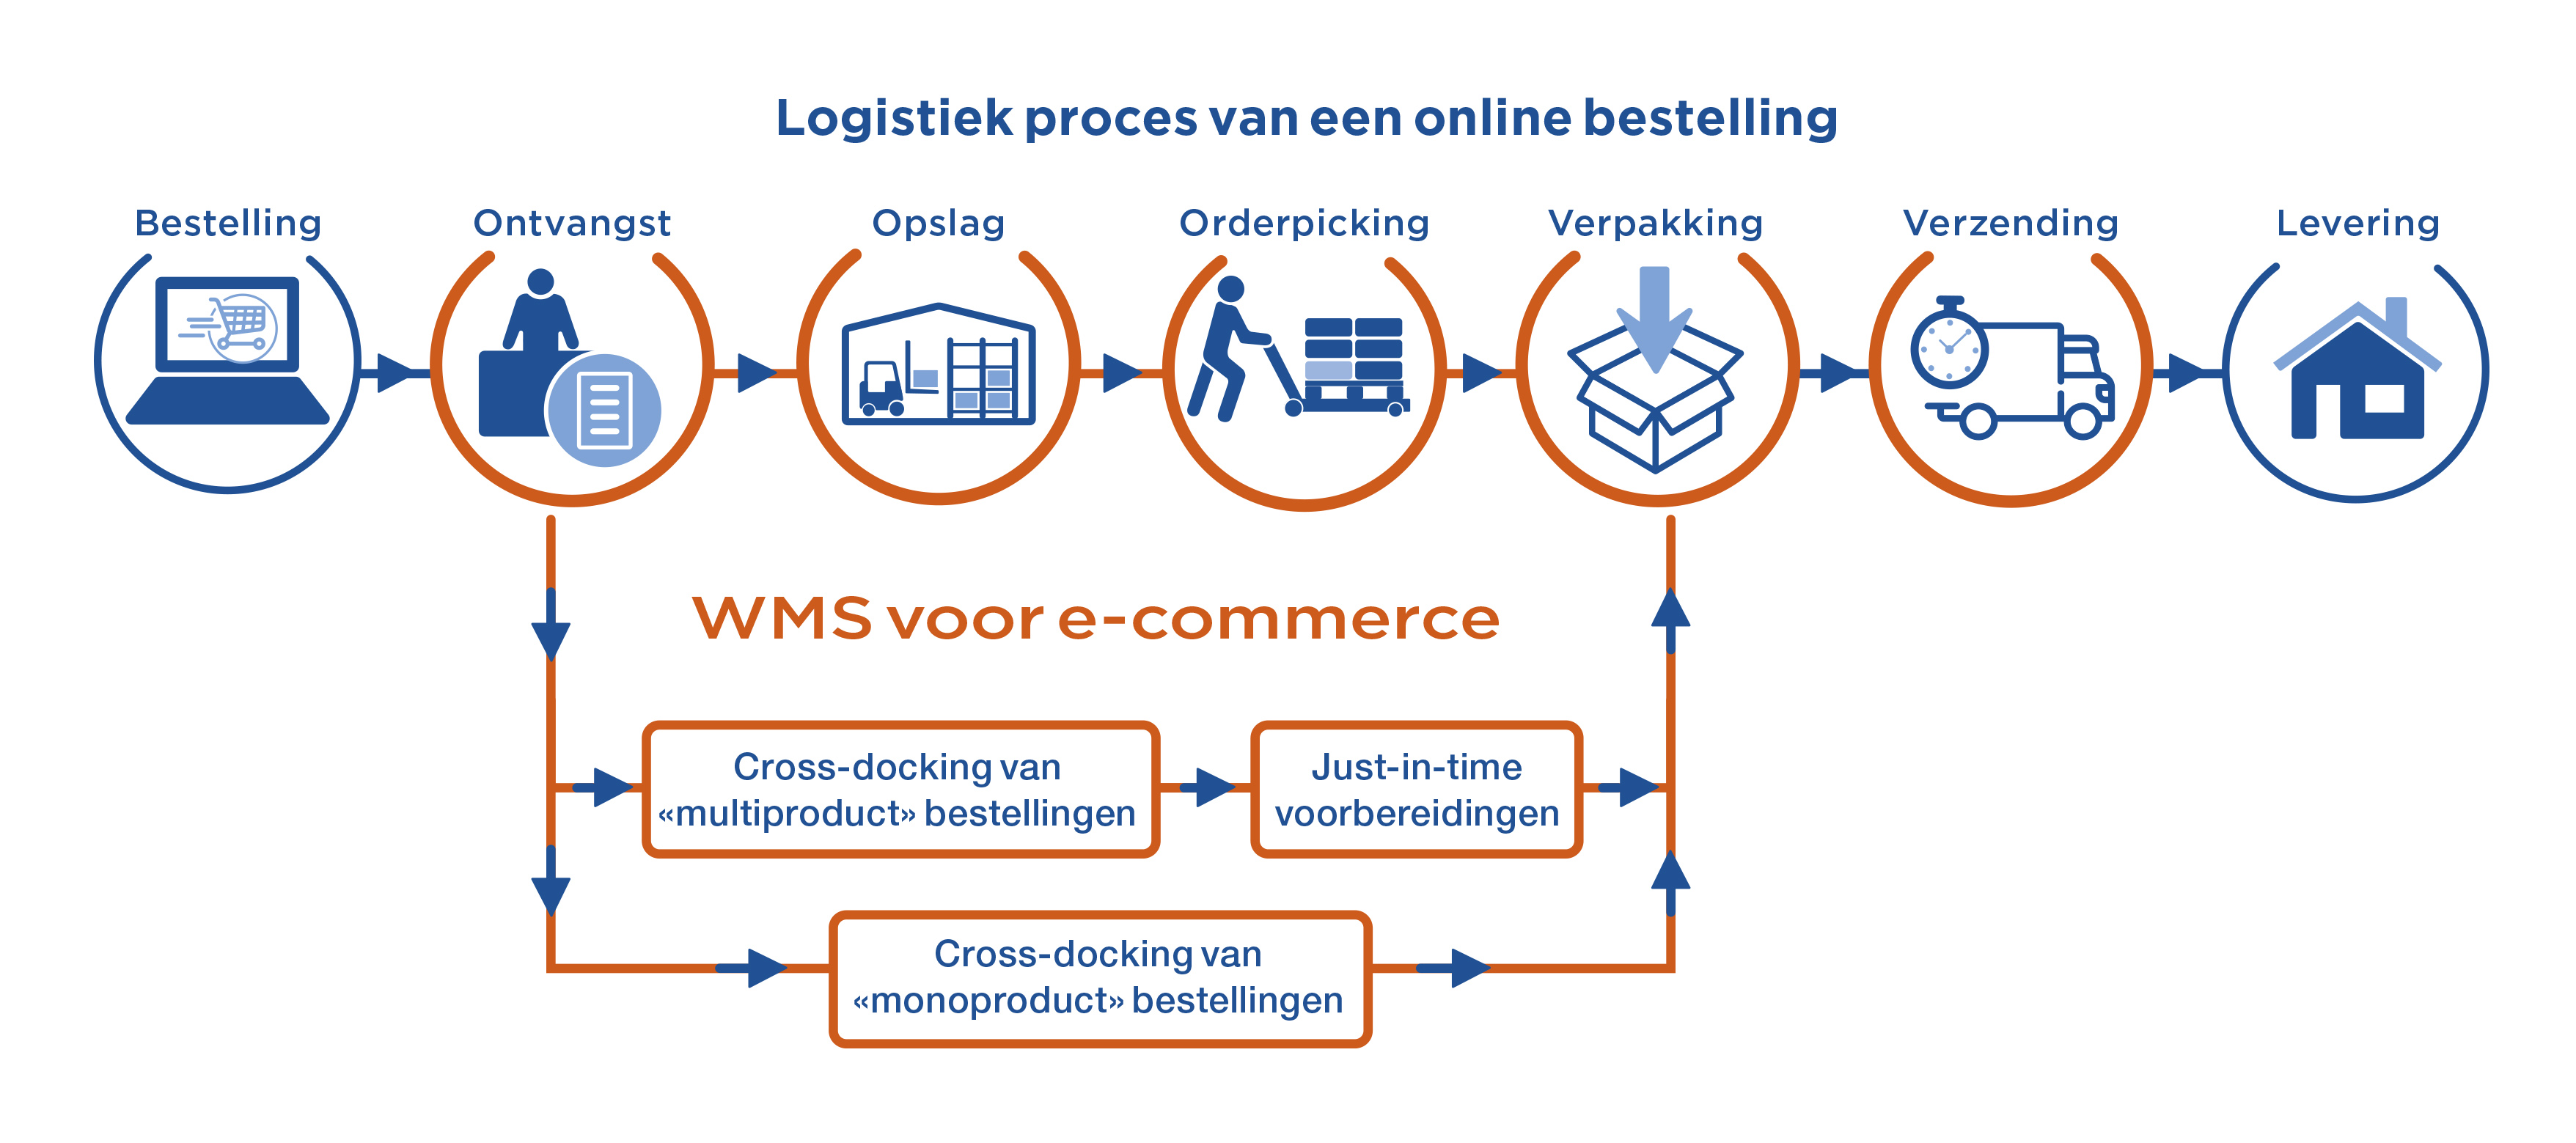 Logistiek proces van een online bestelling